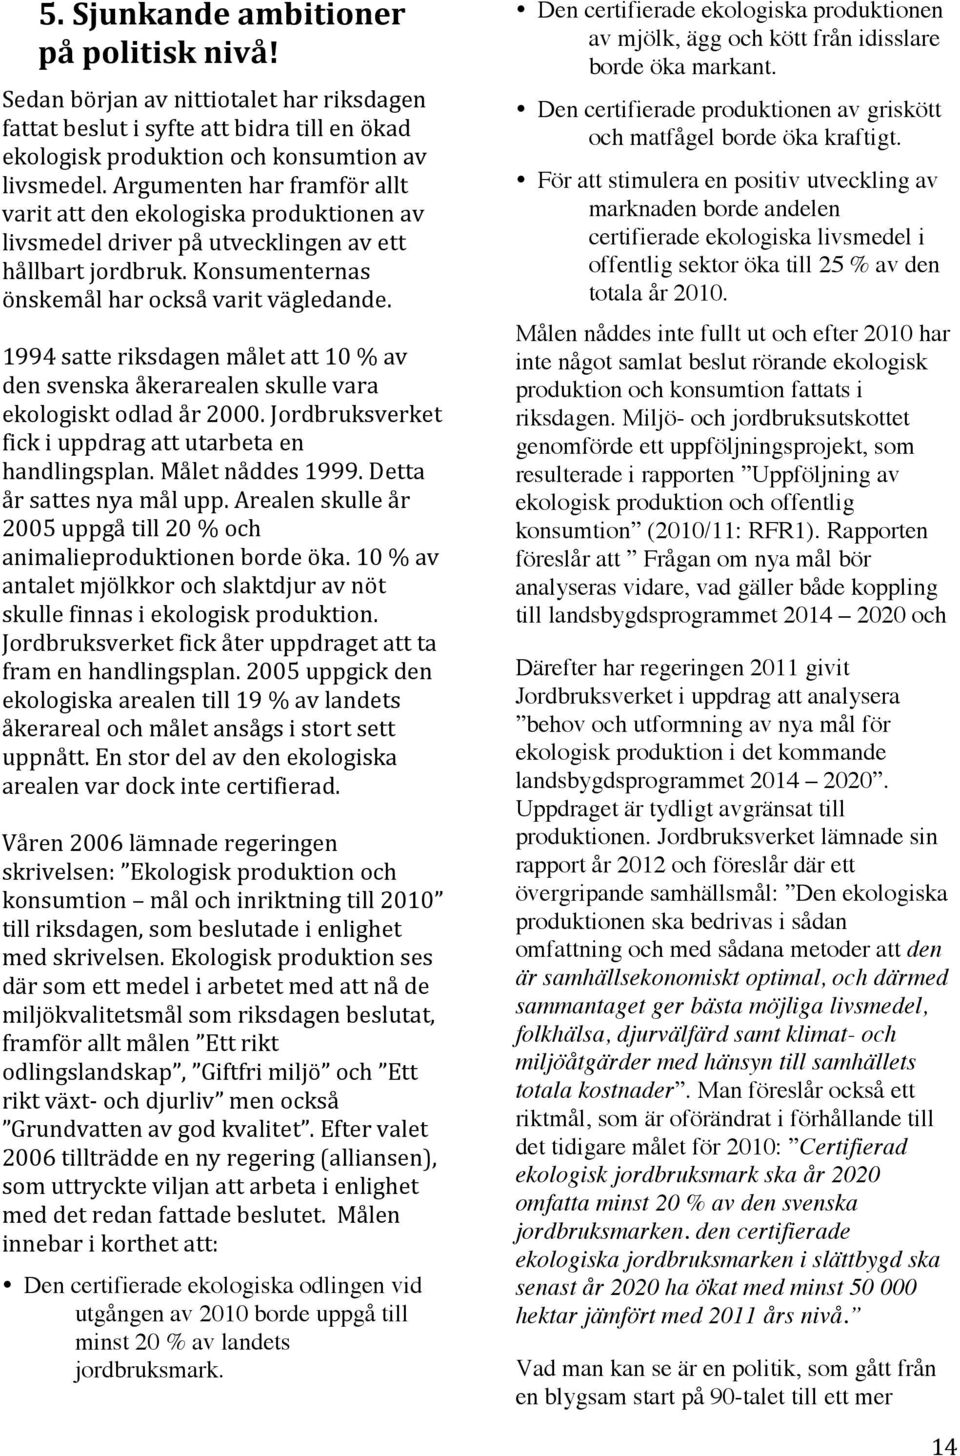 1994 satte riksdagen målet att 10 % av den svenska åkerarealen skulle vara ekologiskt odlad år 2000. Jordbruksverket fick i uppdrag att utarbeta en handlingsplan. Målet nåddes 1999.